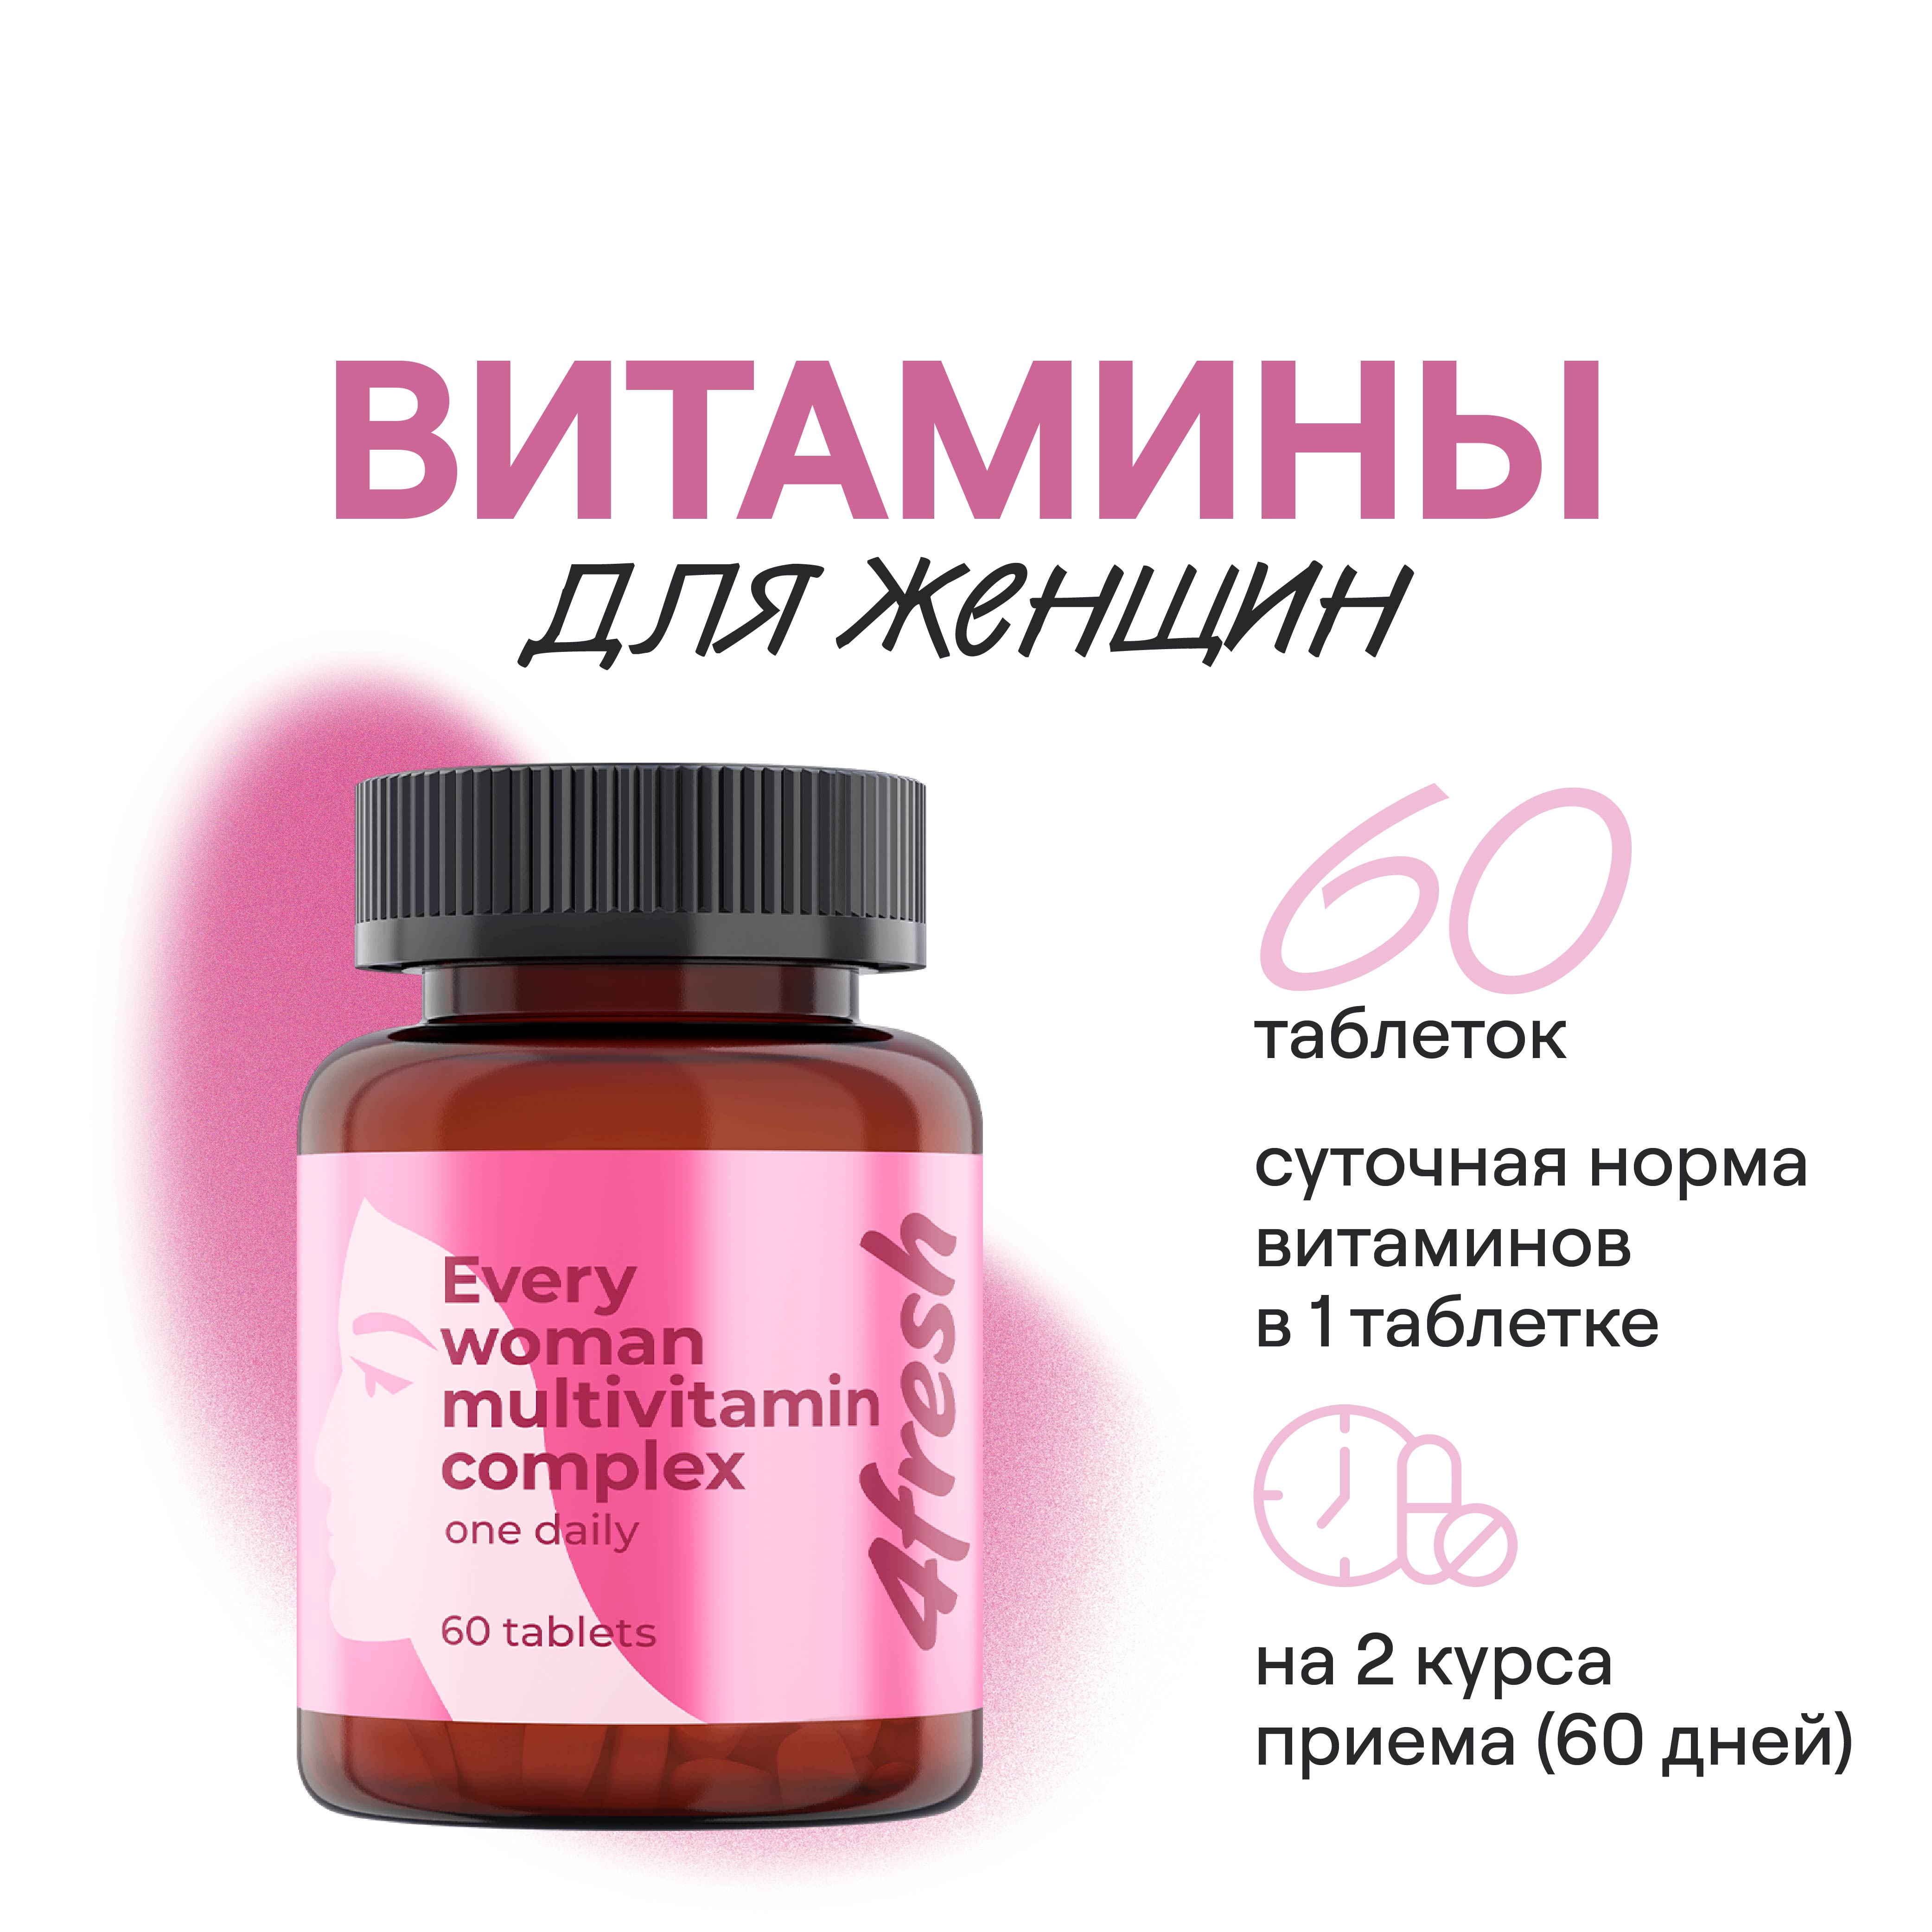 Витамины для женщин 4fresh HEALTH с коэнзим Q10 и альфа-липоевой кислотой таблетки 60 шт